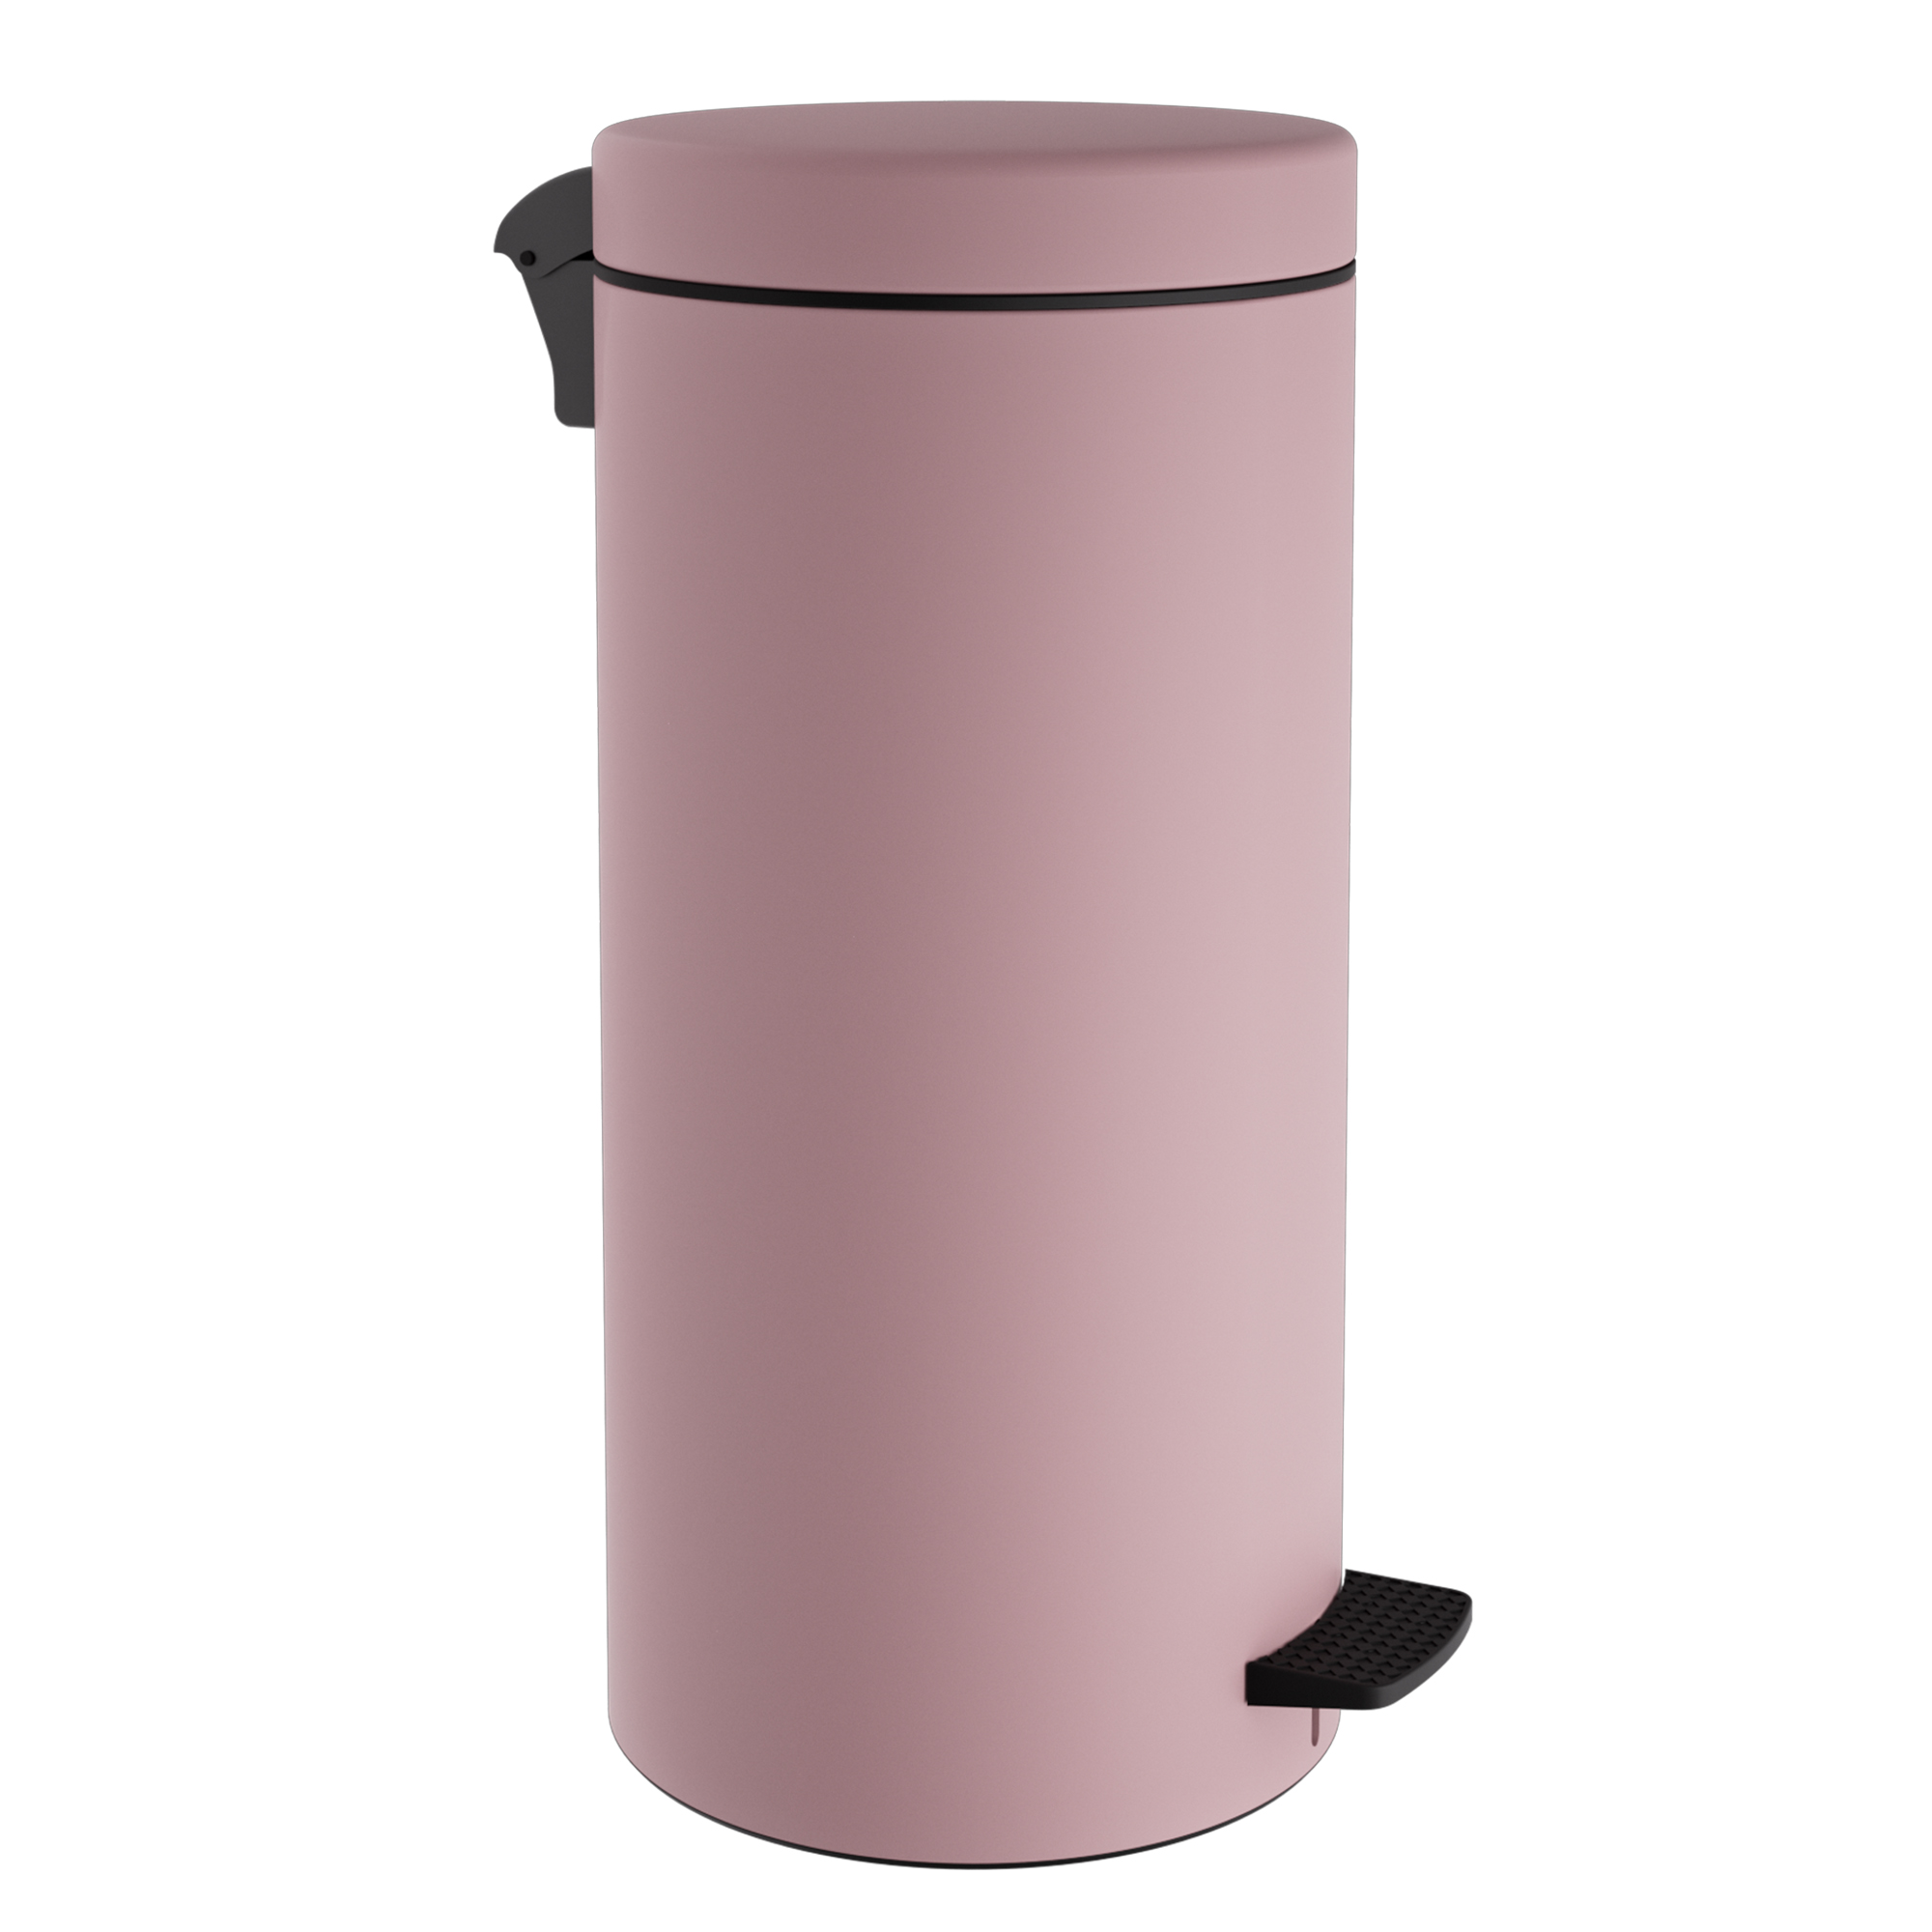 Καλάθι Απορριμμάτων 20lt Soft Close Ανοξείδωτο Matt Pink Pam & Co Φ25×55εκ. 18-310-303 (Υλικό: Ανοξείδωτο, Χρώμα: Ροζ) – Pam & Co – 18-310-303